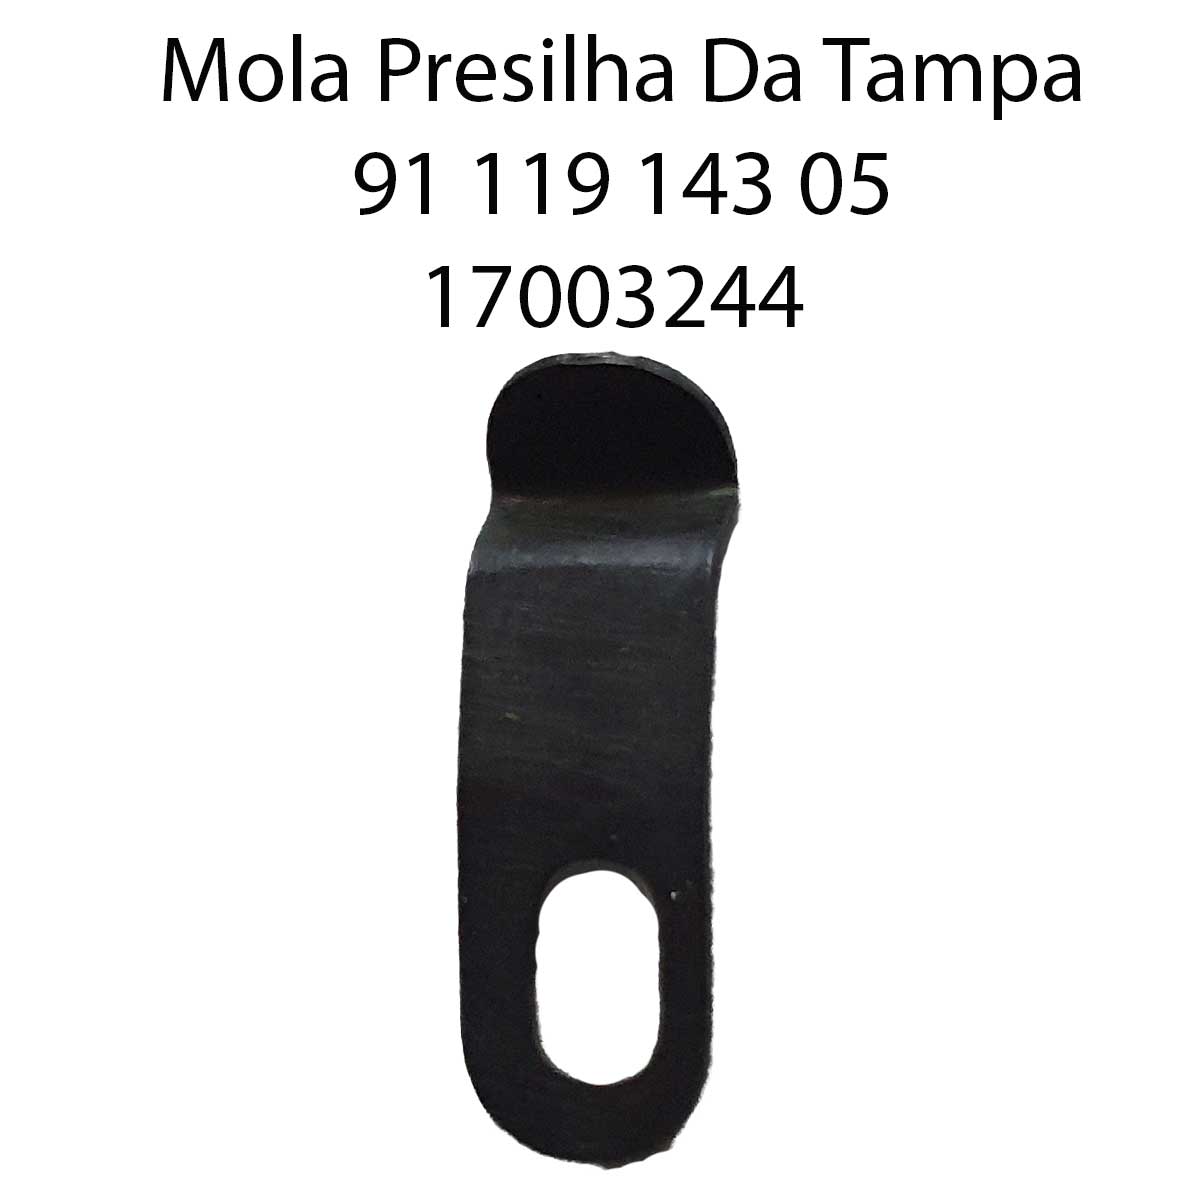 Mola Presilha Da Tampa PFAFF 491 91 119 143 05 17003244 - Pavvia, tudo para a sua confecção!